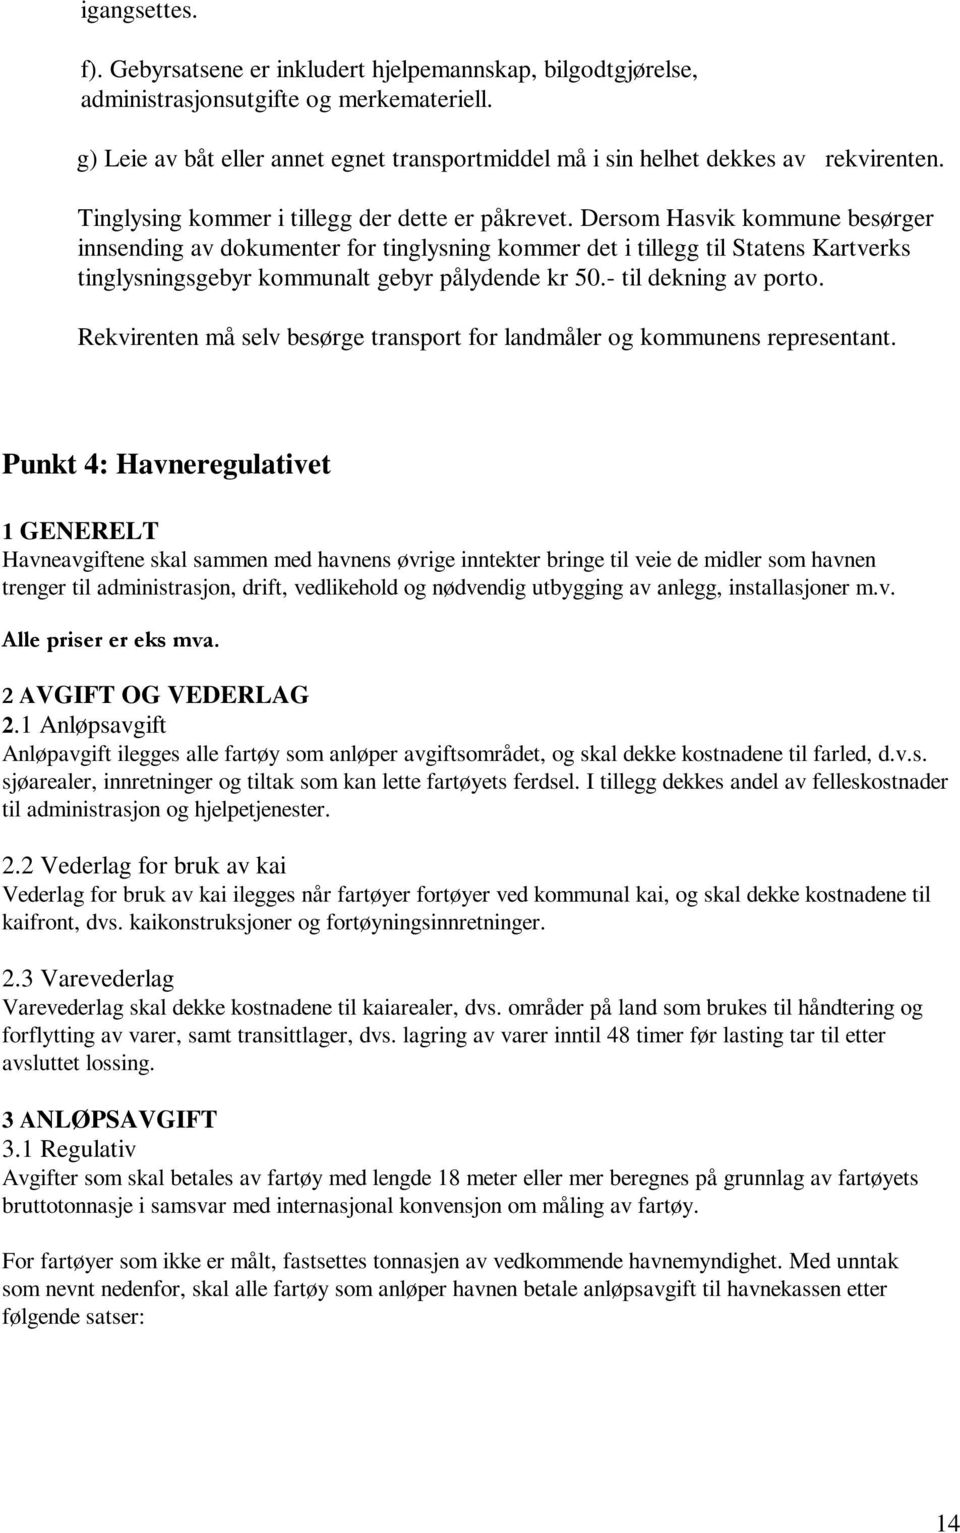 Dersom Hasvik kommune besørger innsending av dokumenter for tinglysning kommer det i tillegg til Statens Kartverks tinglysningsgebyr kommunalt gebyr pålydende kr 50.- til dekning av porto.